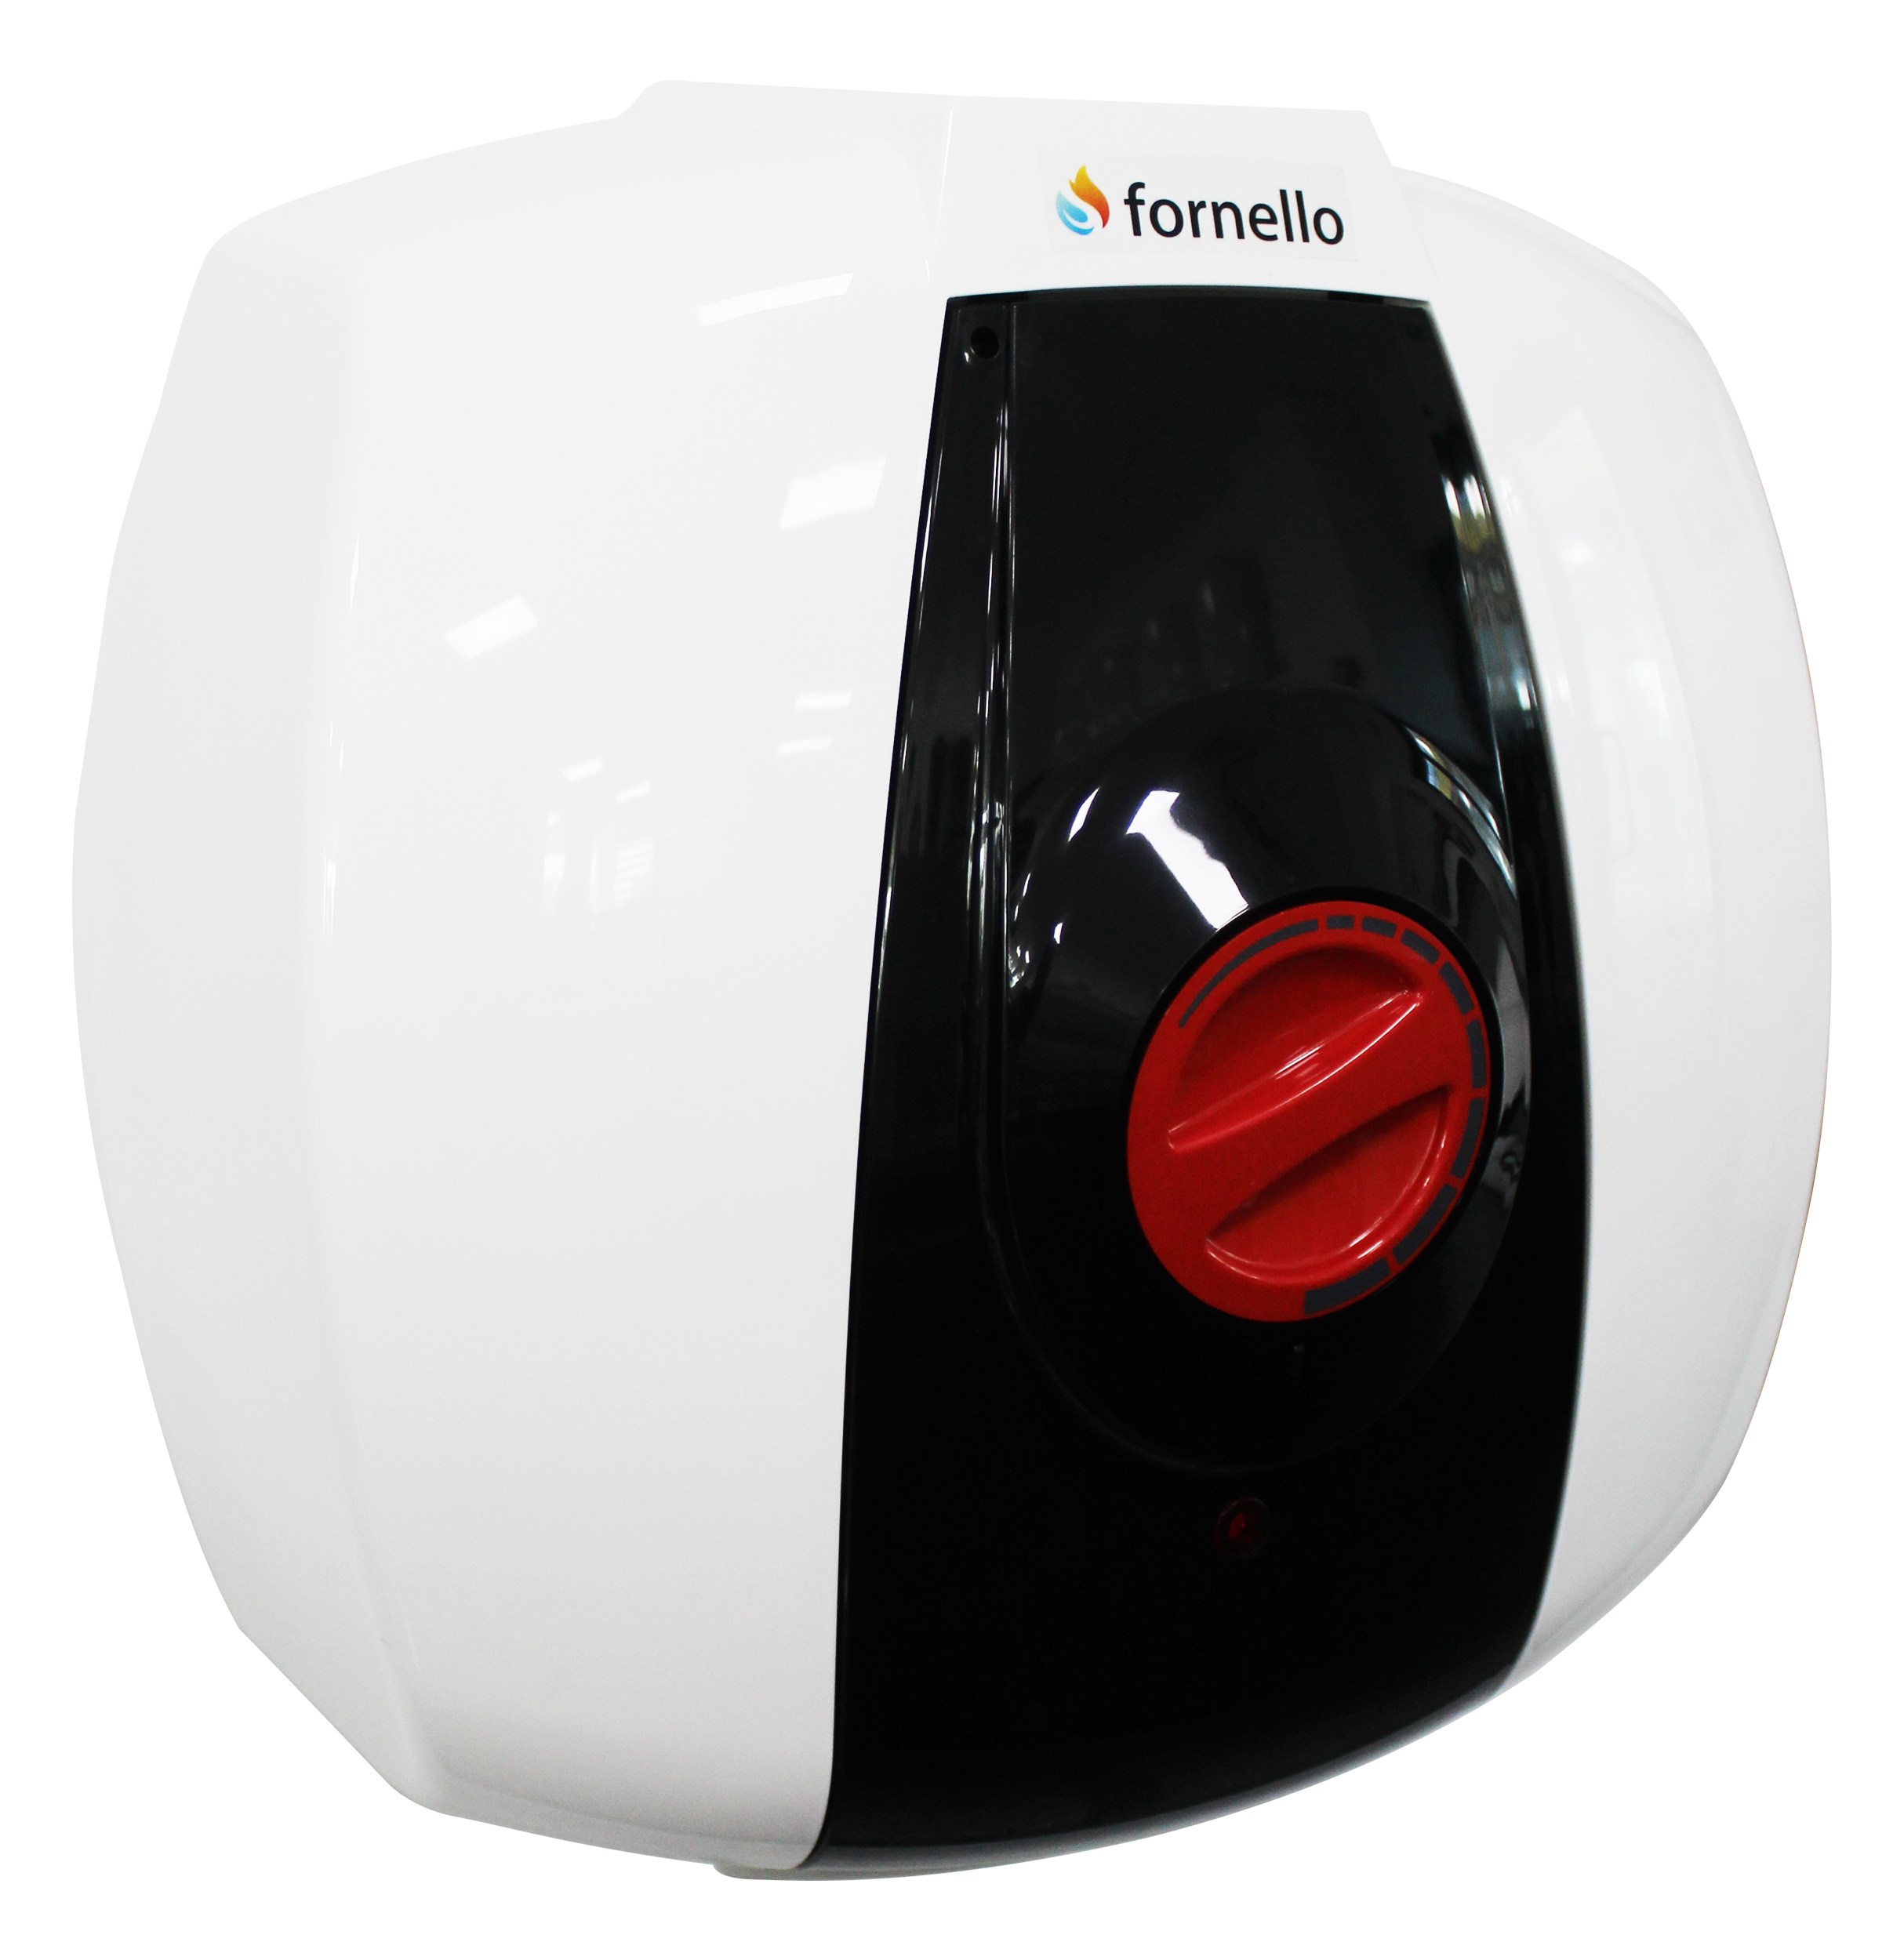 Boiler electric Fornello Optima GCA 1015 M54 RC, 1500 W, 10 l, 0.9 Mpa, Termostat reglabil, Montare deasupra chiuvetei, Alb Fornello